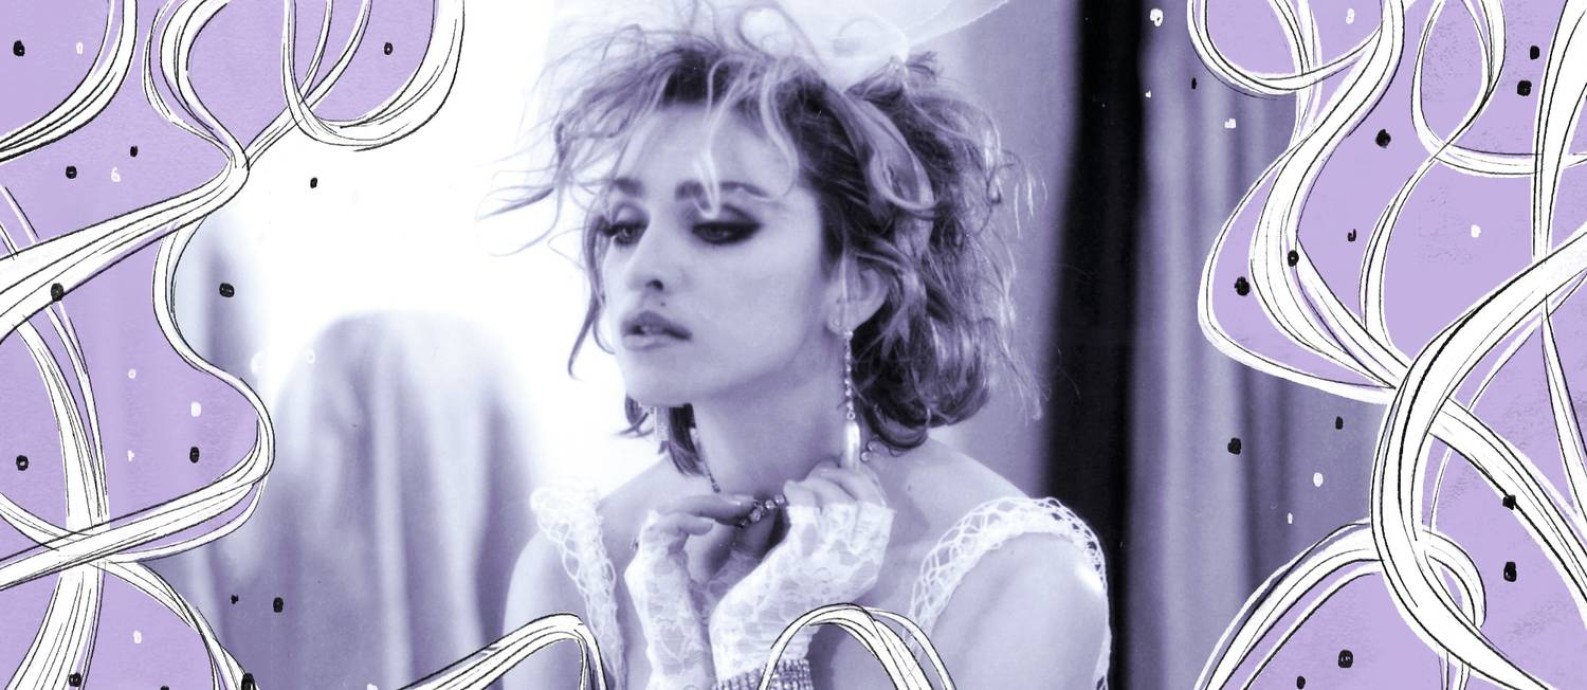 Madonna no clipe de "Like a virgin", de 1984 Foto: Reprodução